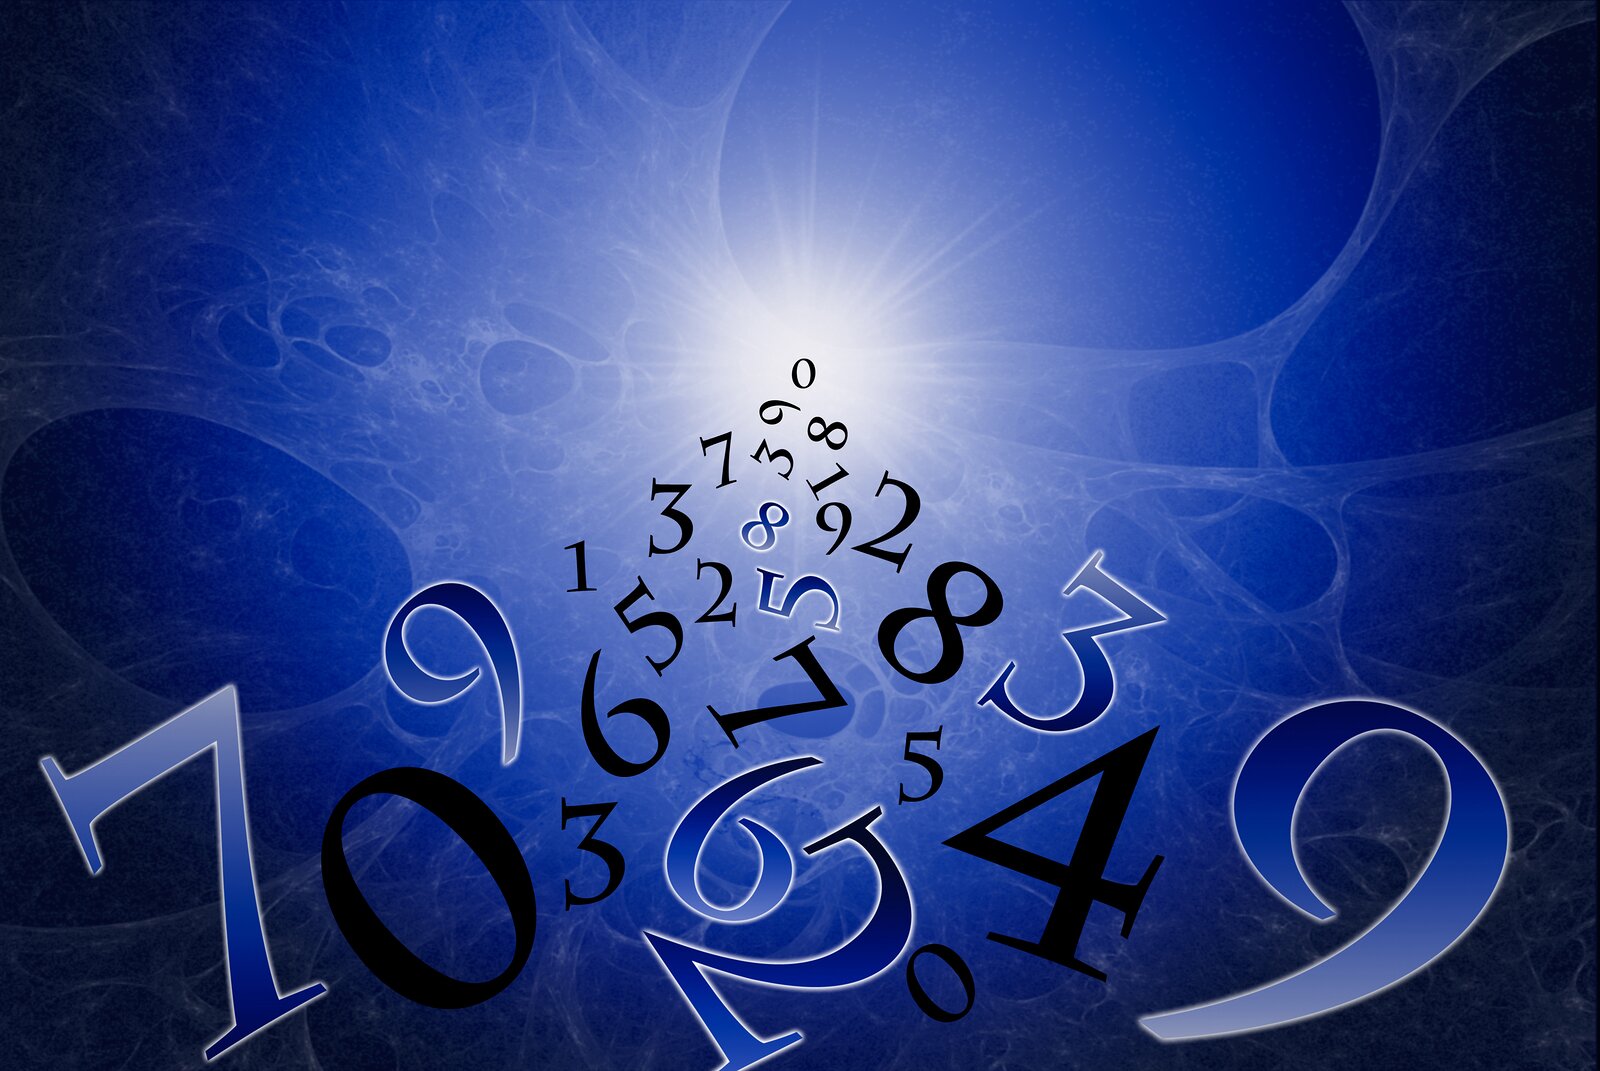 Нумерология имени и рождения. Как рассчитать свое число (код)?